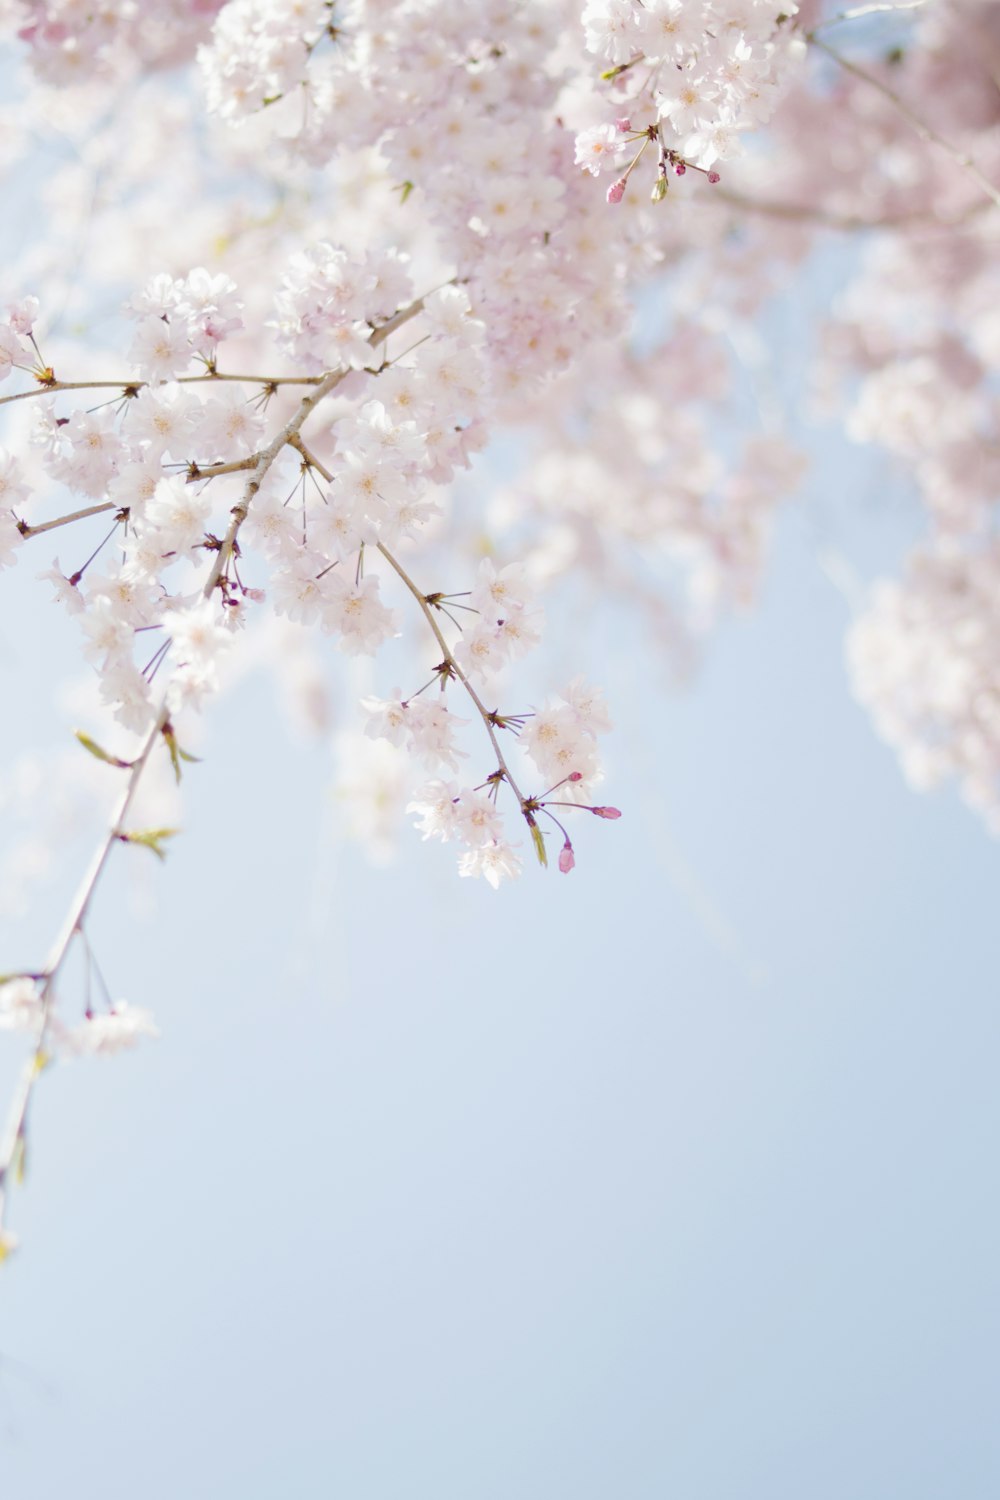 ピンクの花びらの花のセレクティブ フォーカス写真